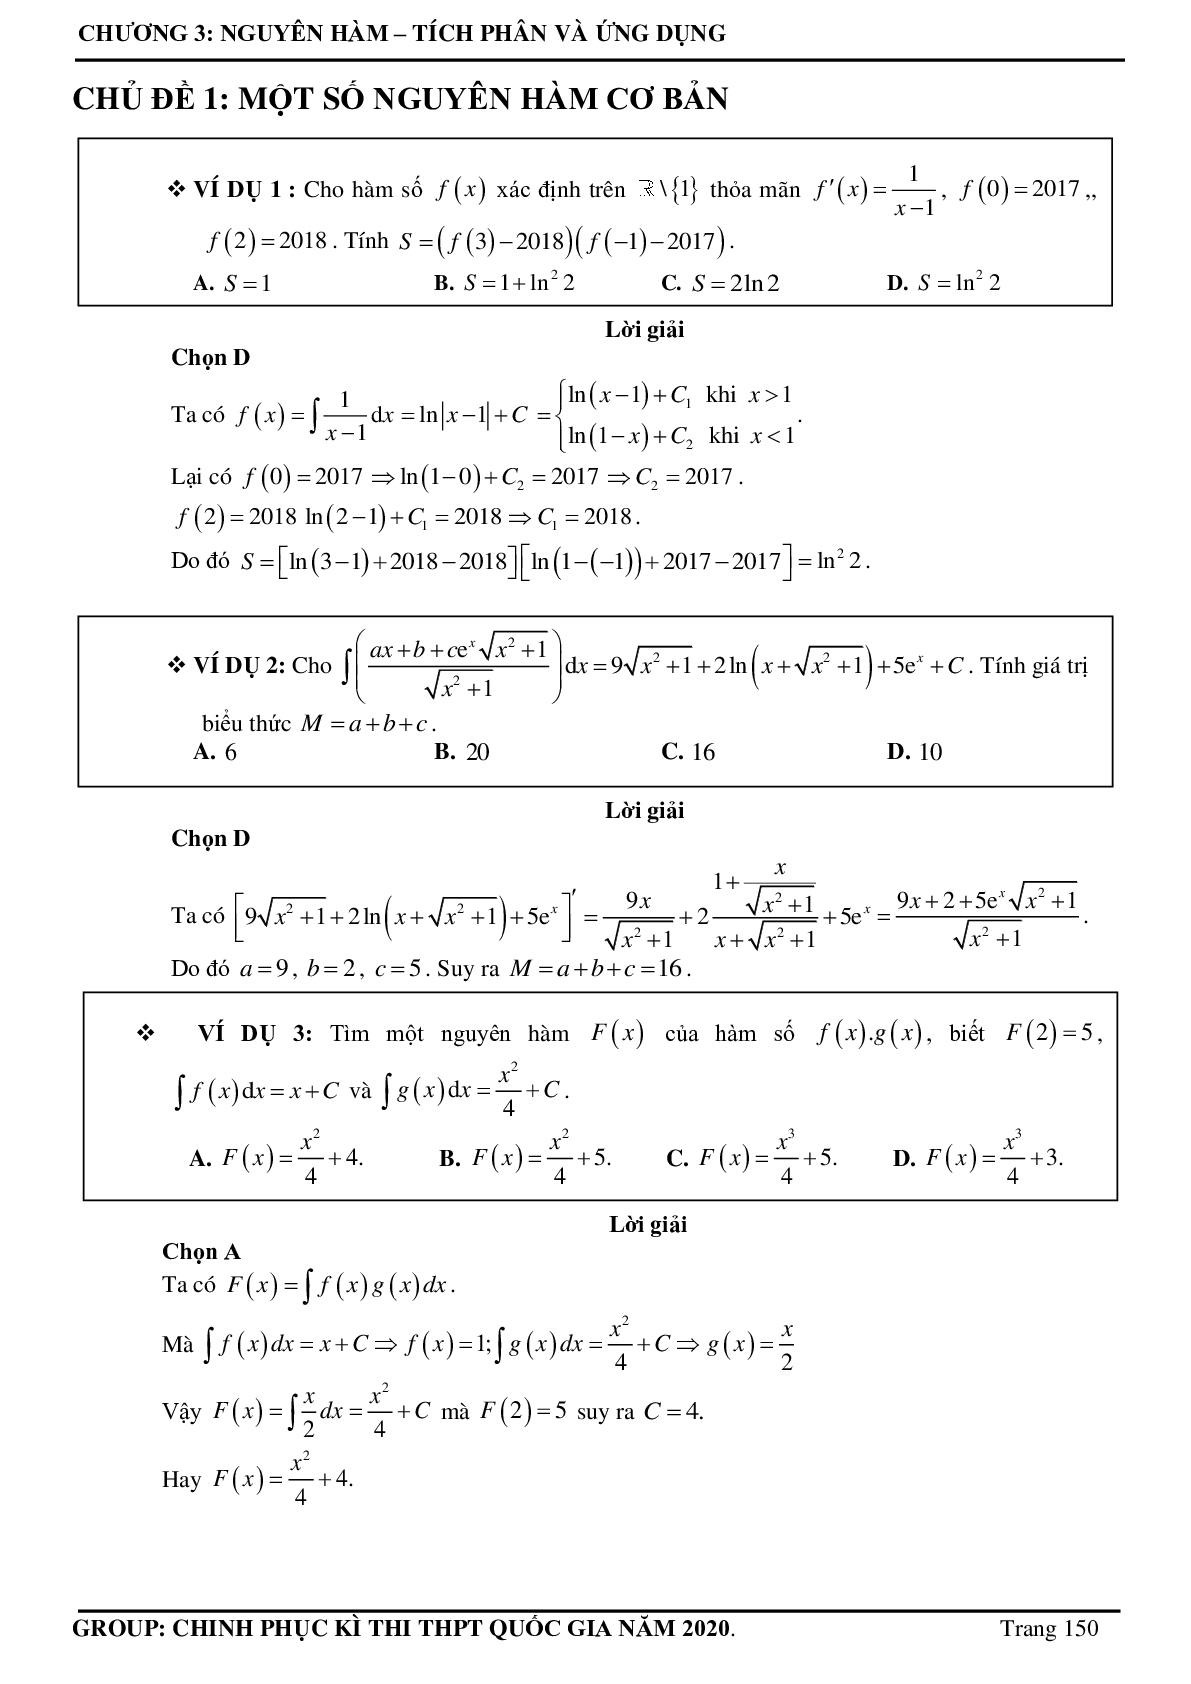 Tuyển chọn các bài toán Nguyên hàm - Tích phân Vận dụng cao thường xuất hiện trong đề thi - có đáp án chi tiết (trang 1)